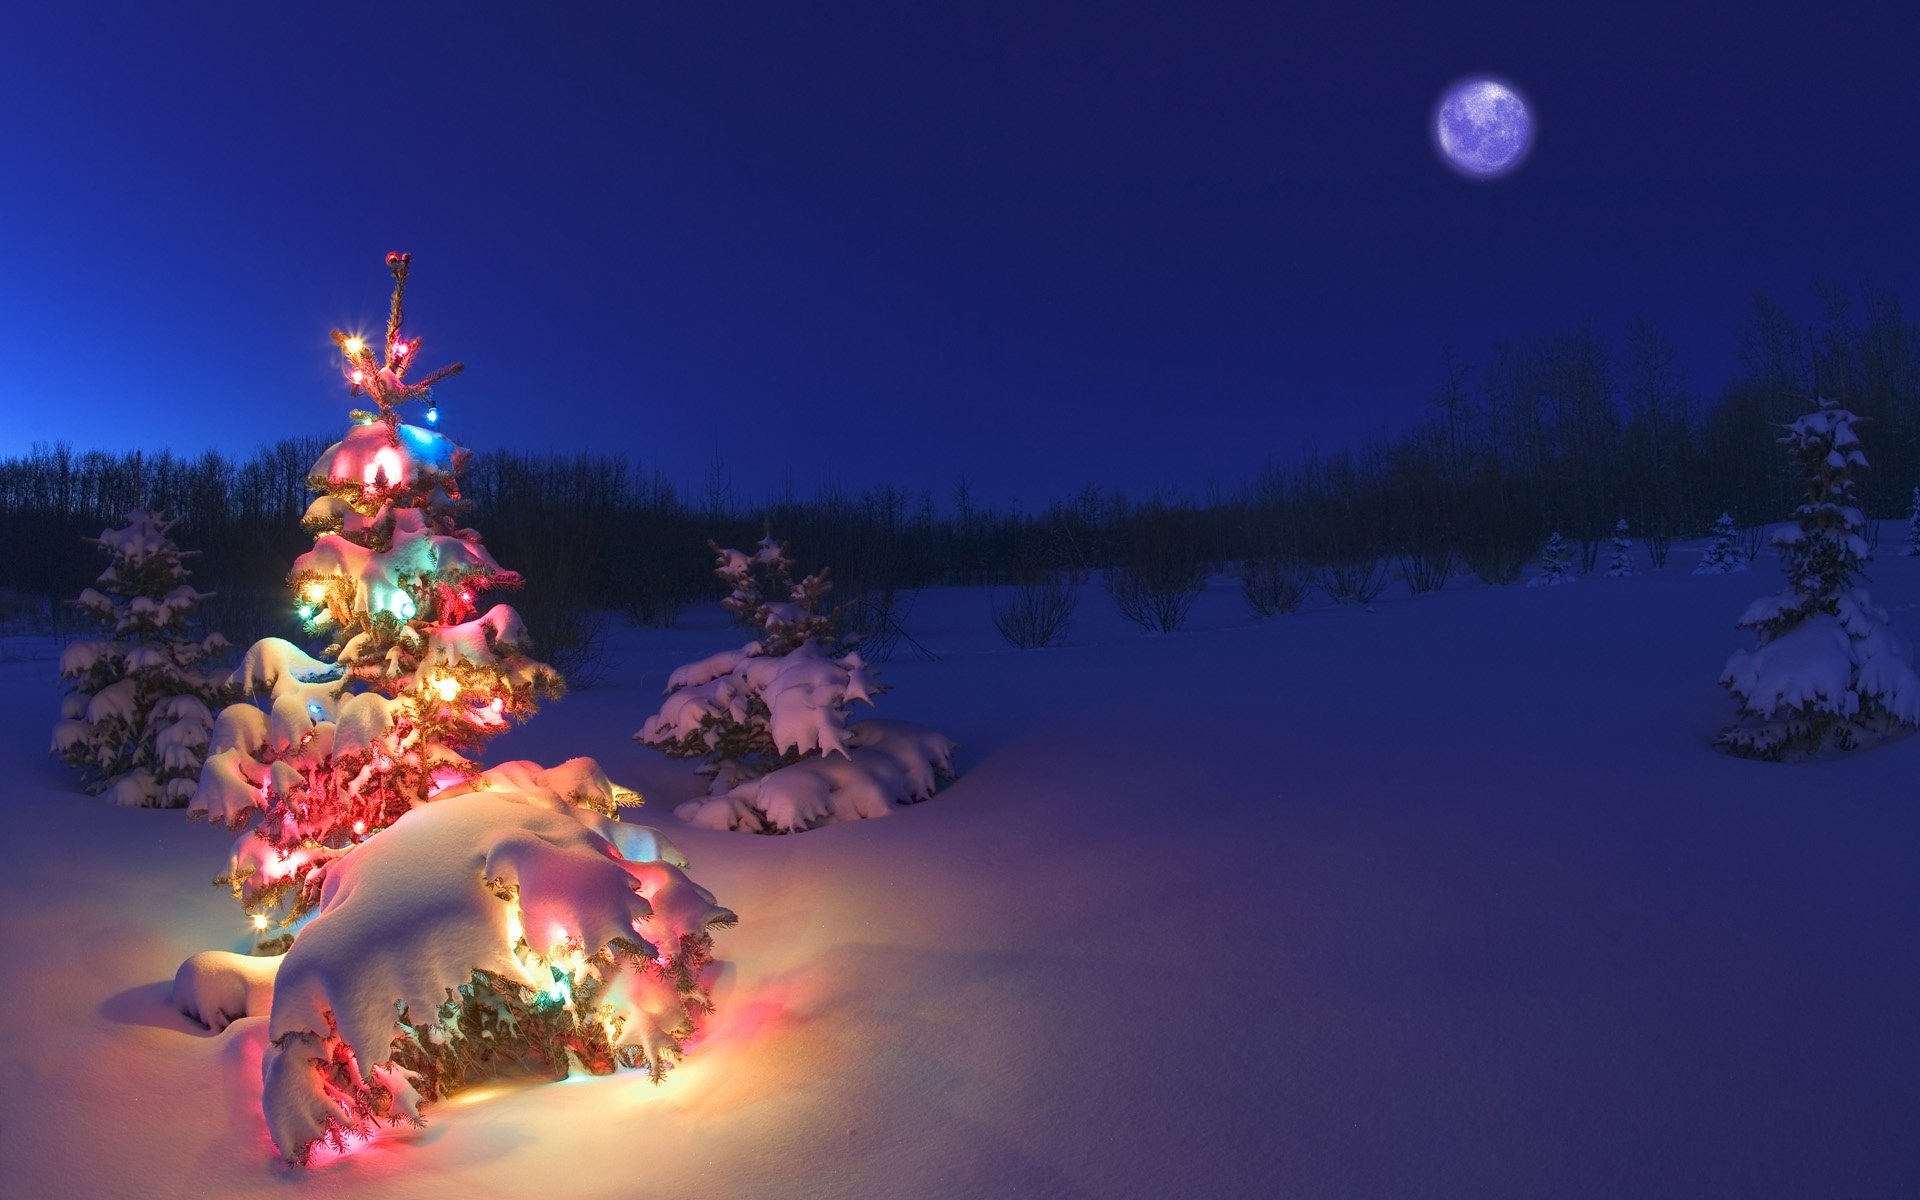 Fotot e pemës së Krishtlindjes